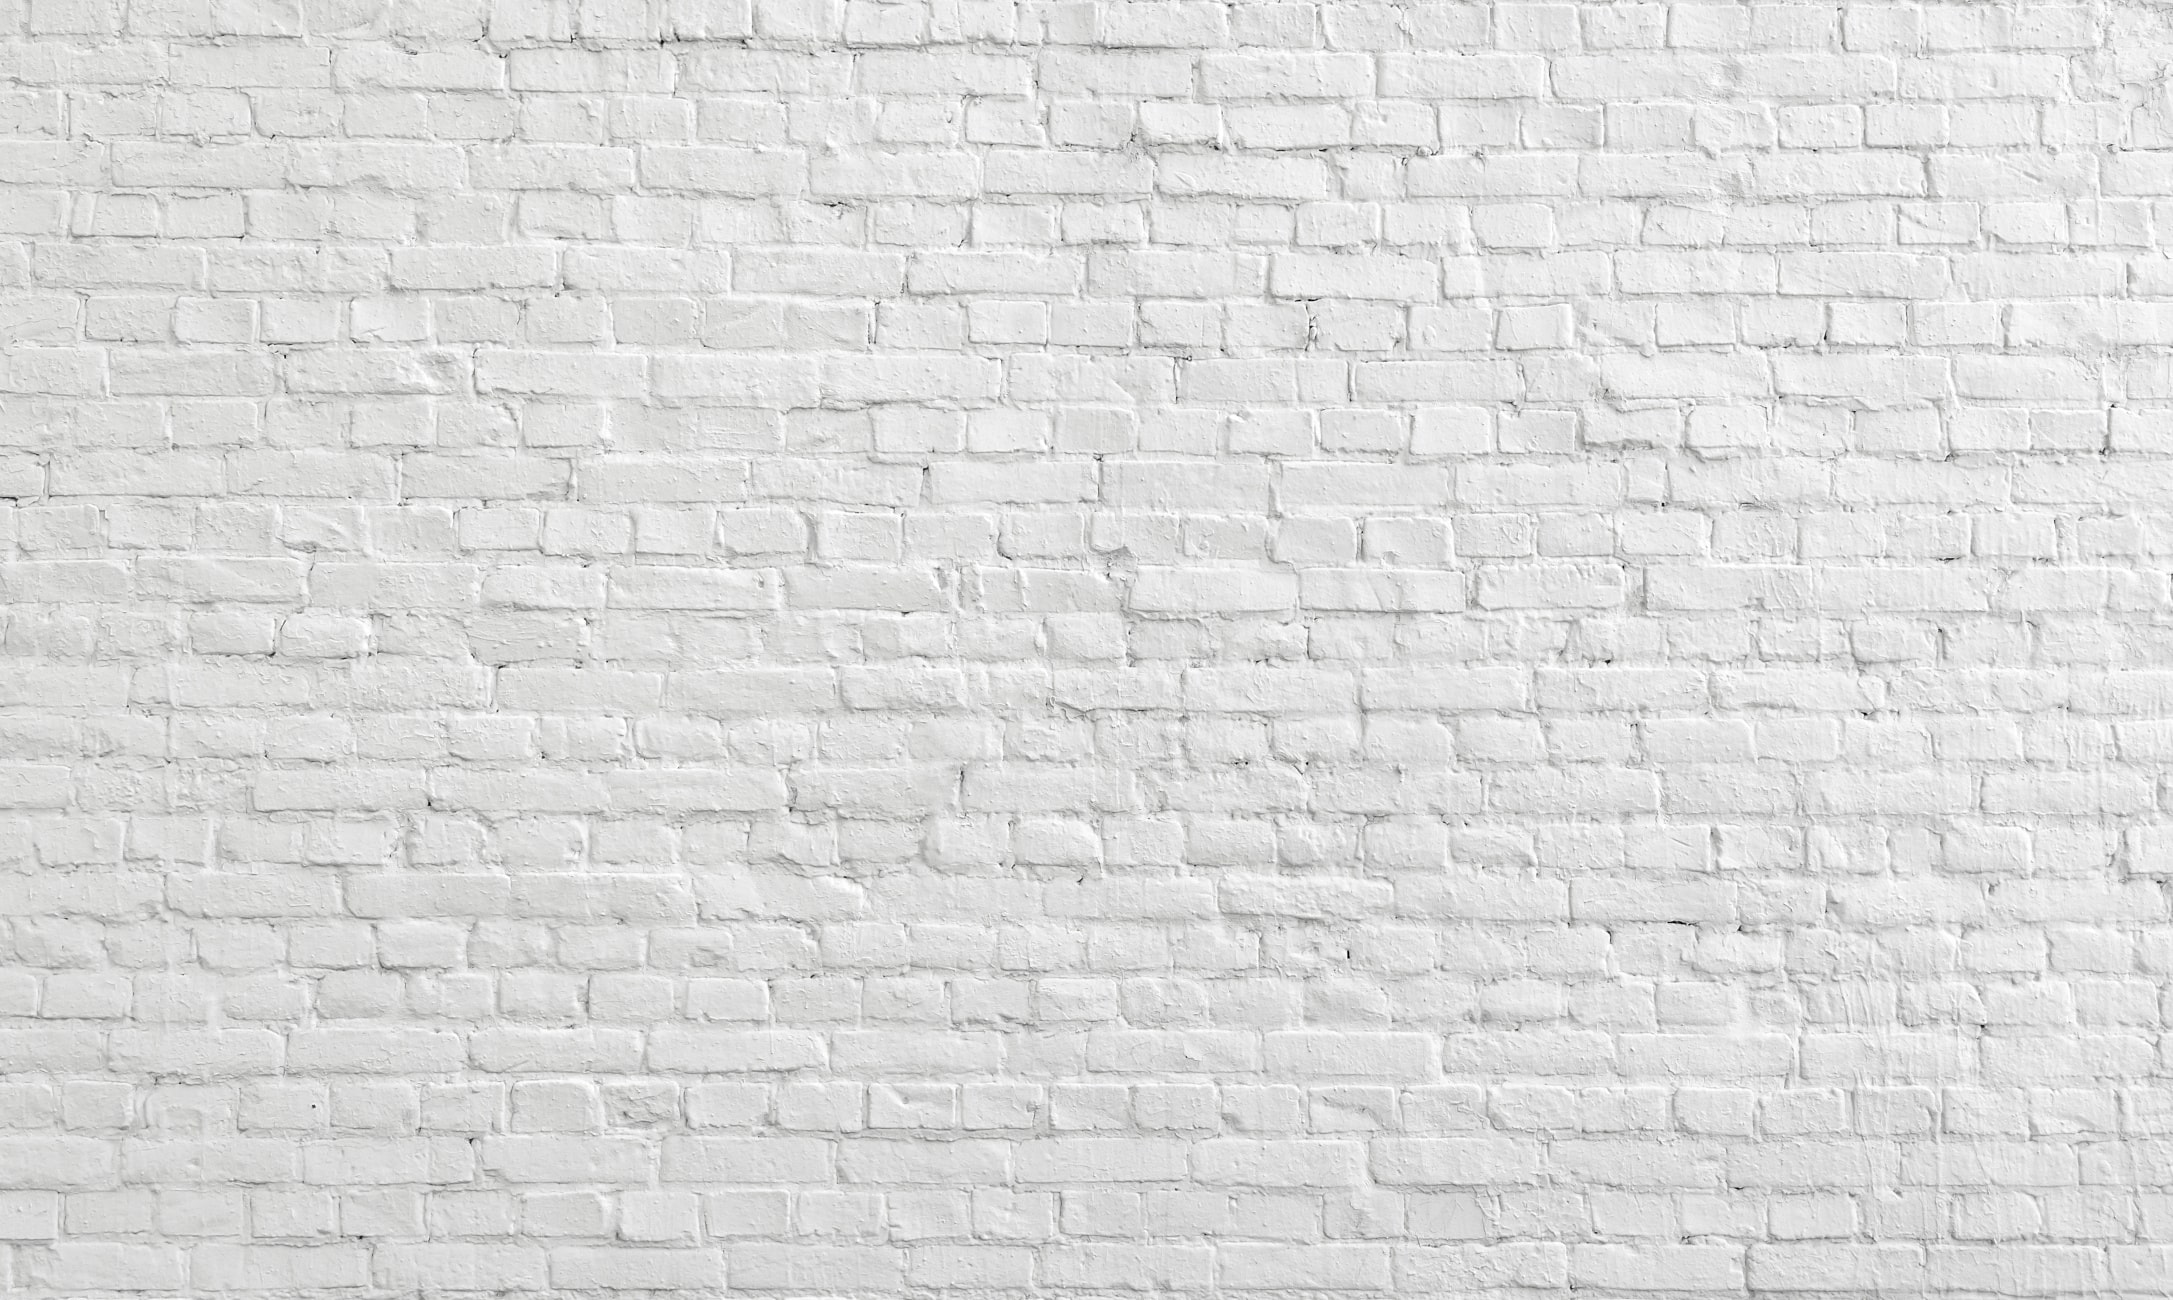 Weiße Backsteinmauer